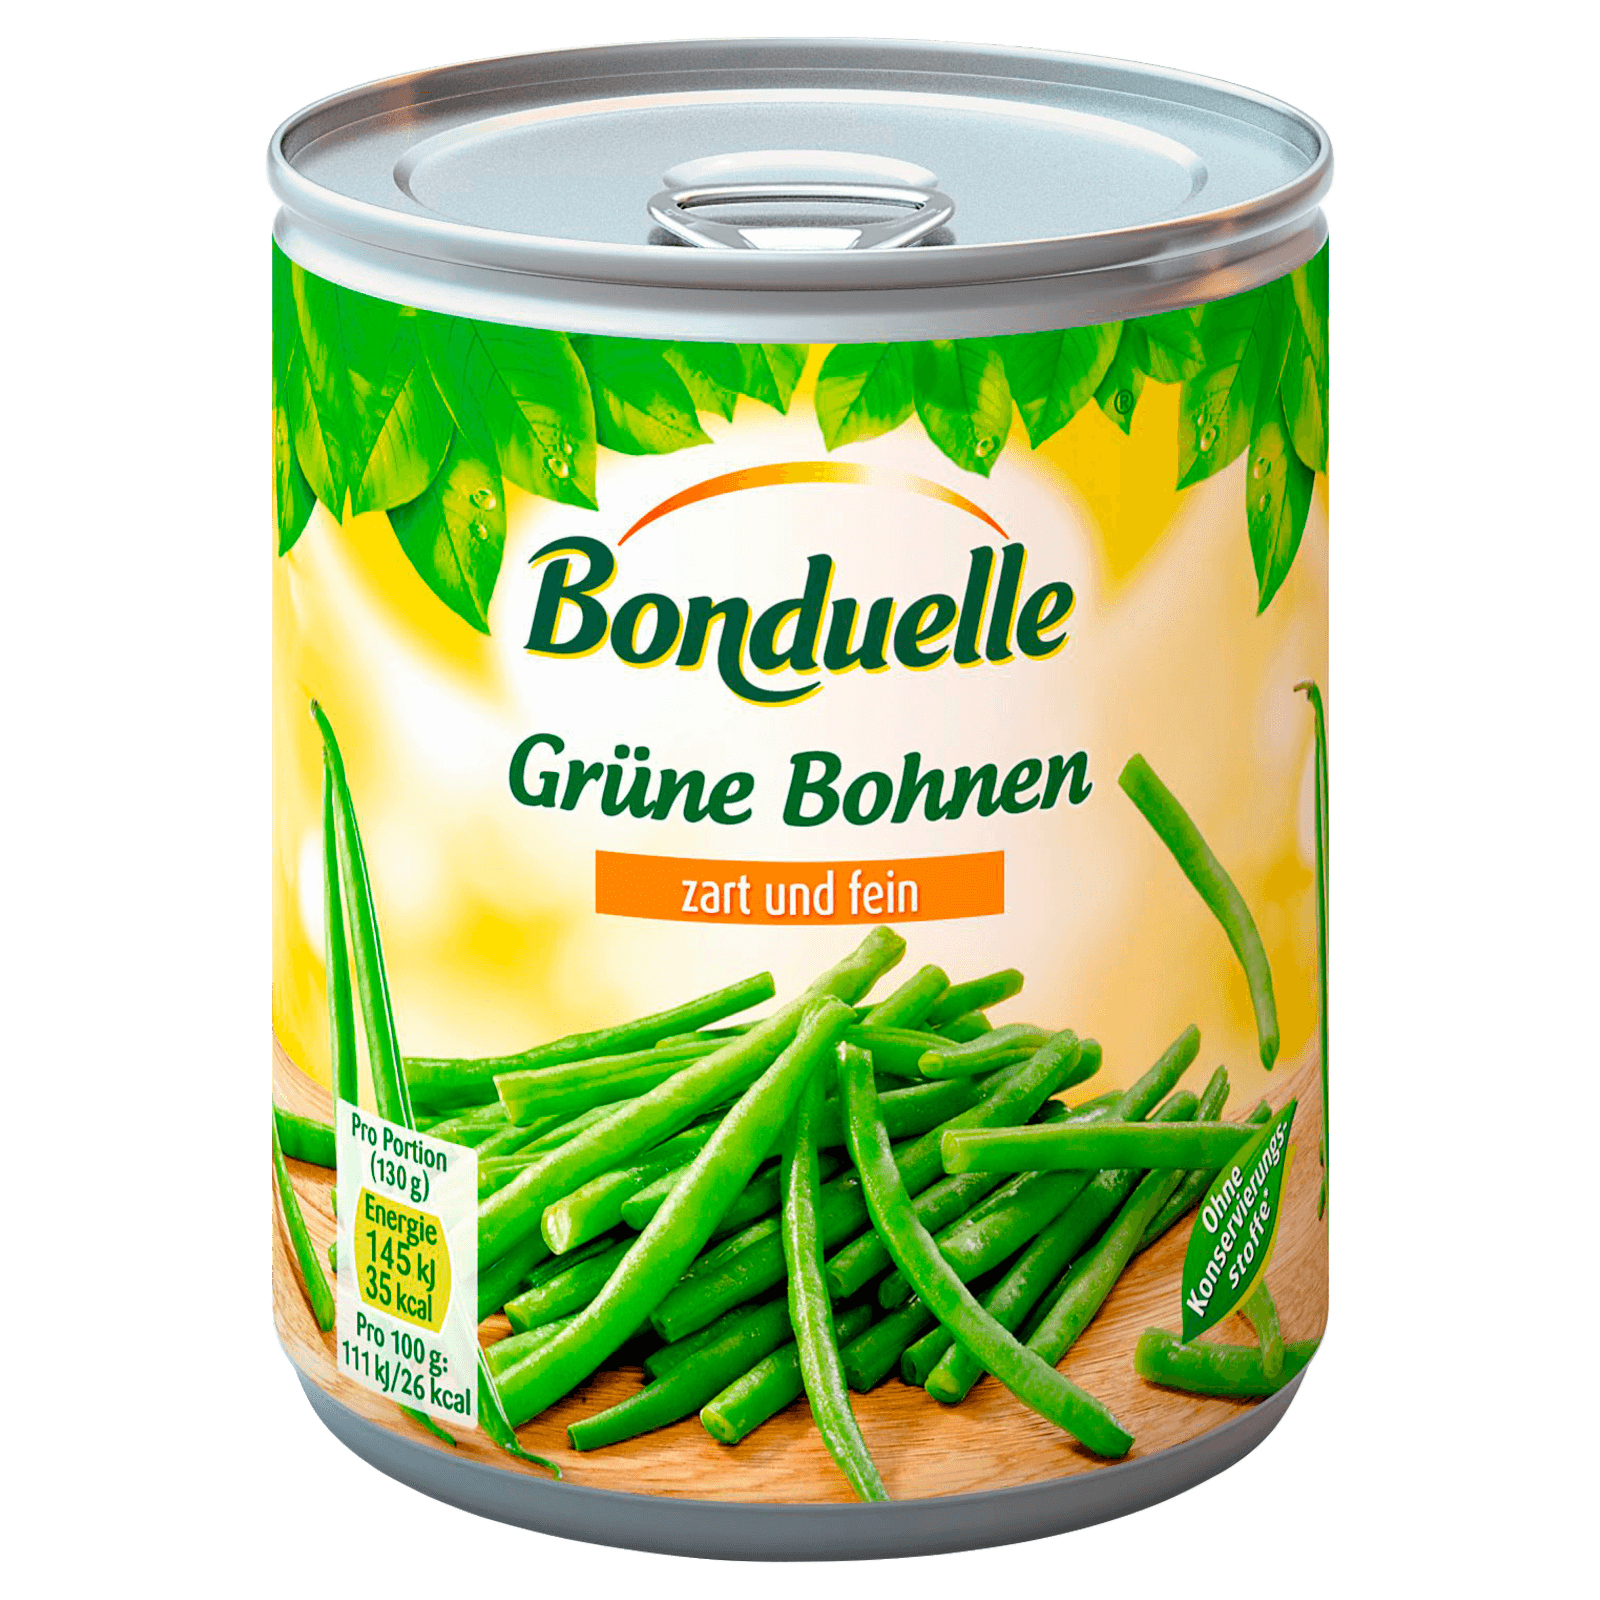 Bonduelle Grüne Bohnen Zart Und Fein 440g Bei Rewe Online Bestellen 